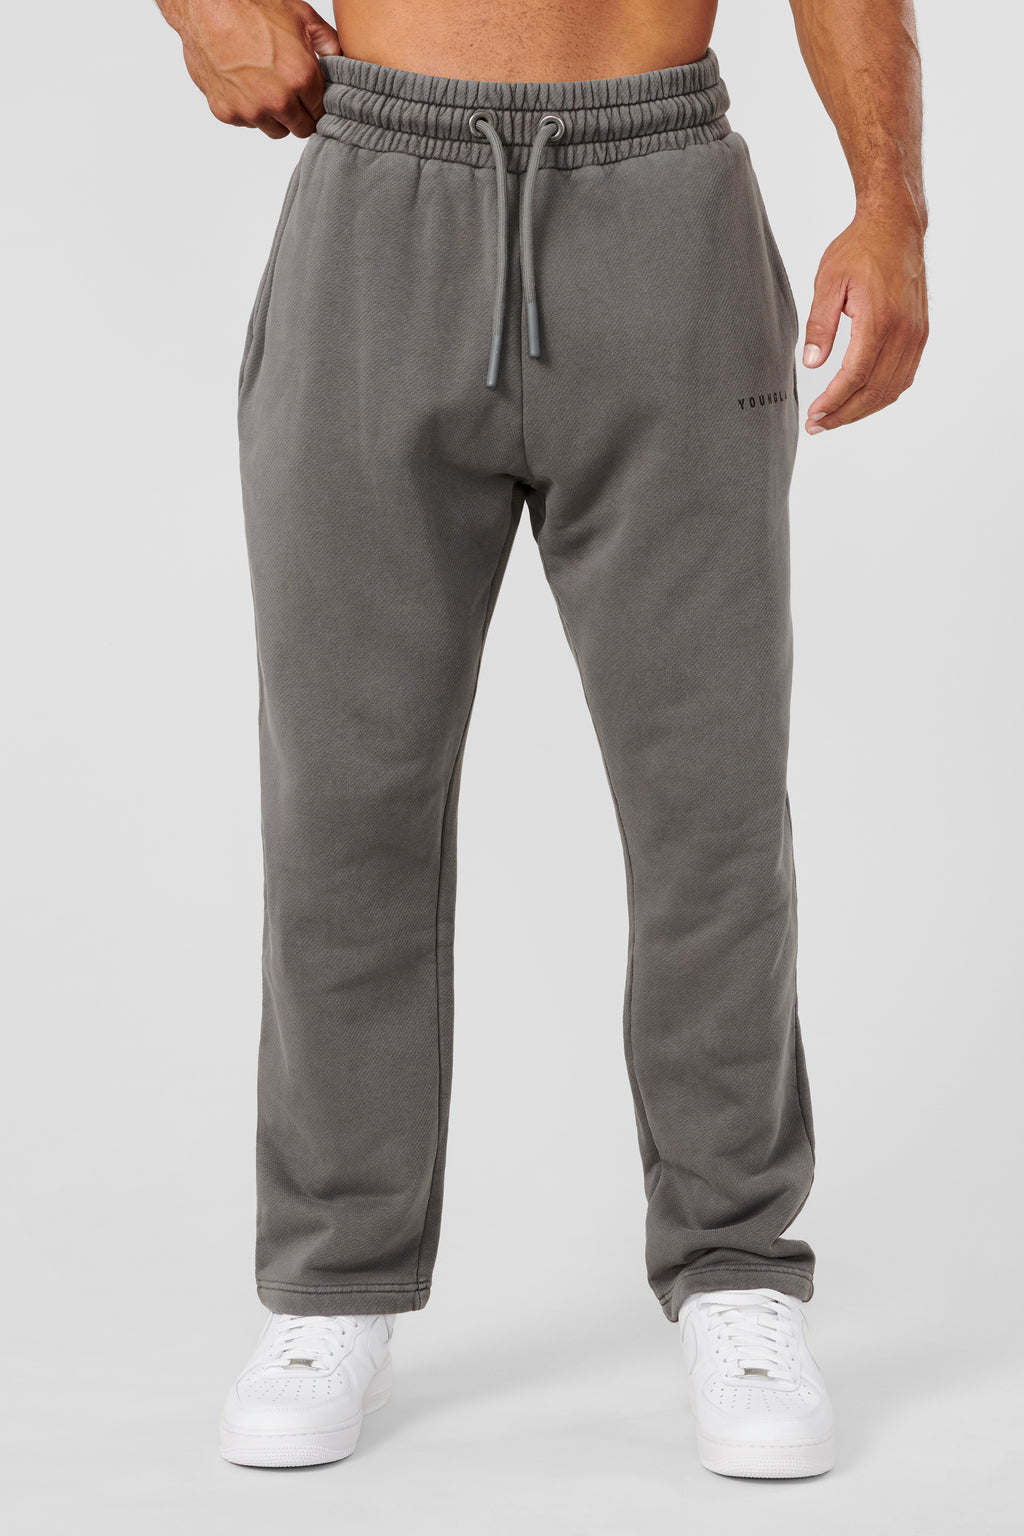 YoungLA Men's Jogger Sweatpants with Pockets Looser Fit Elastic